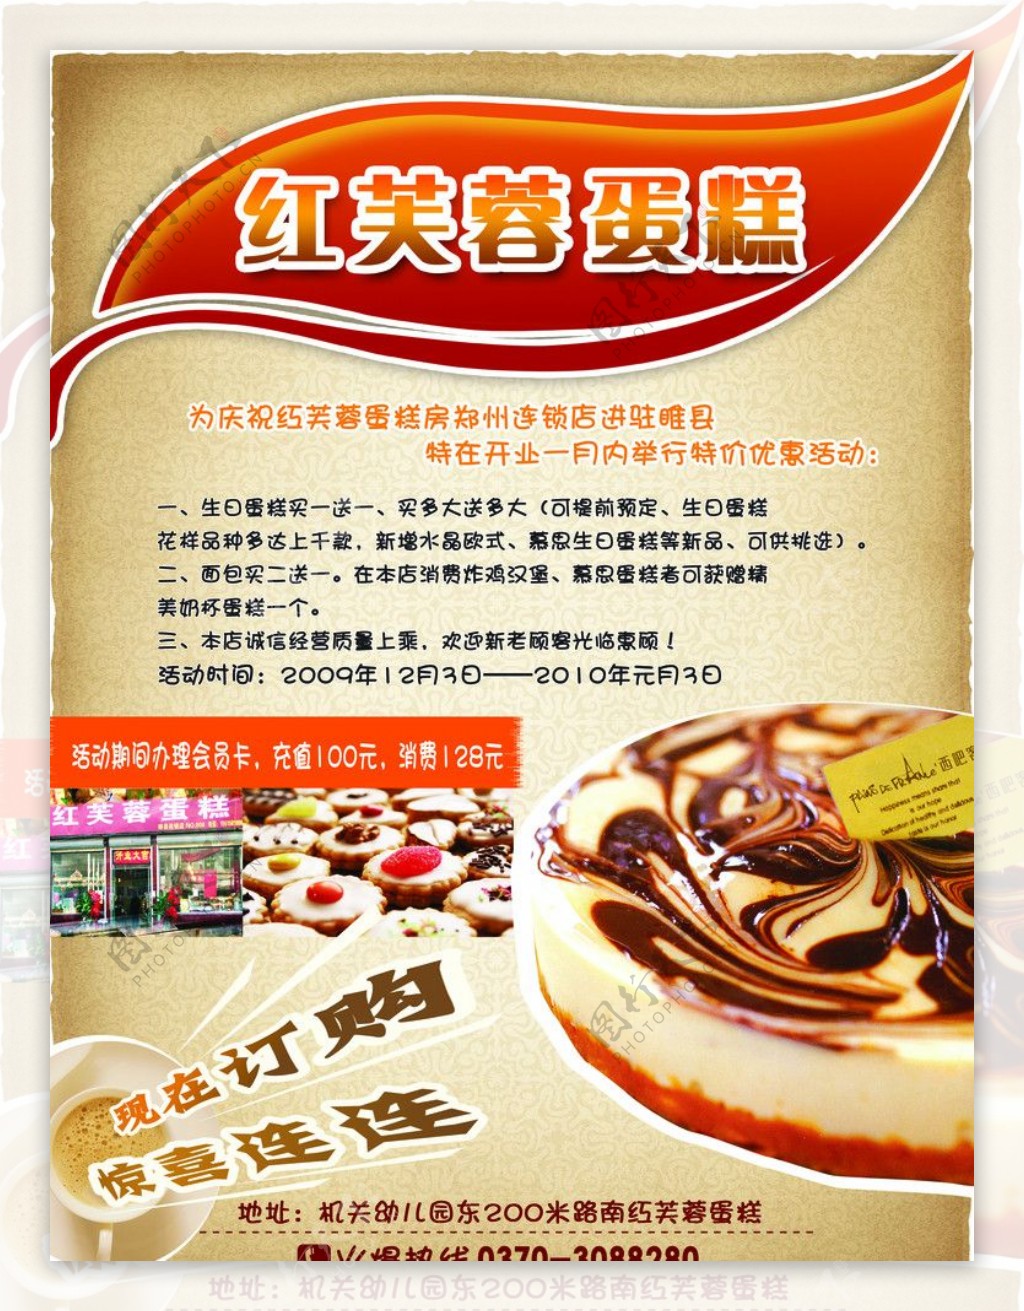 红芙蓉蛋糕房宣传海报图片